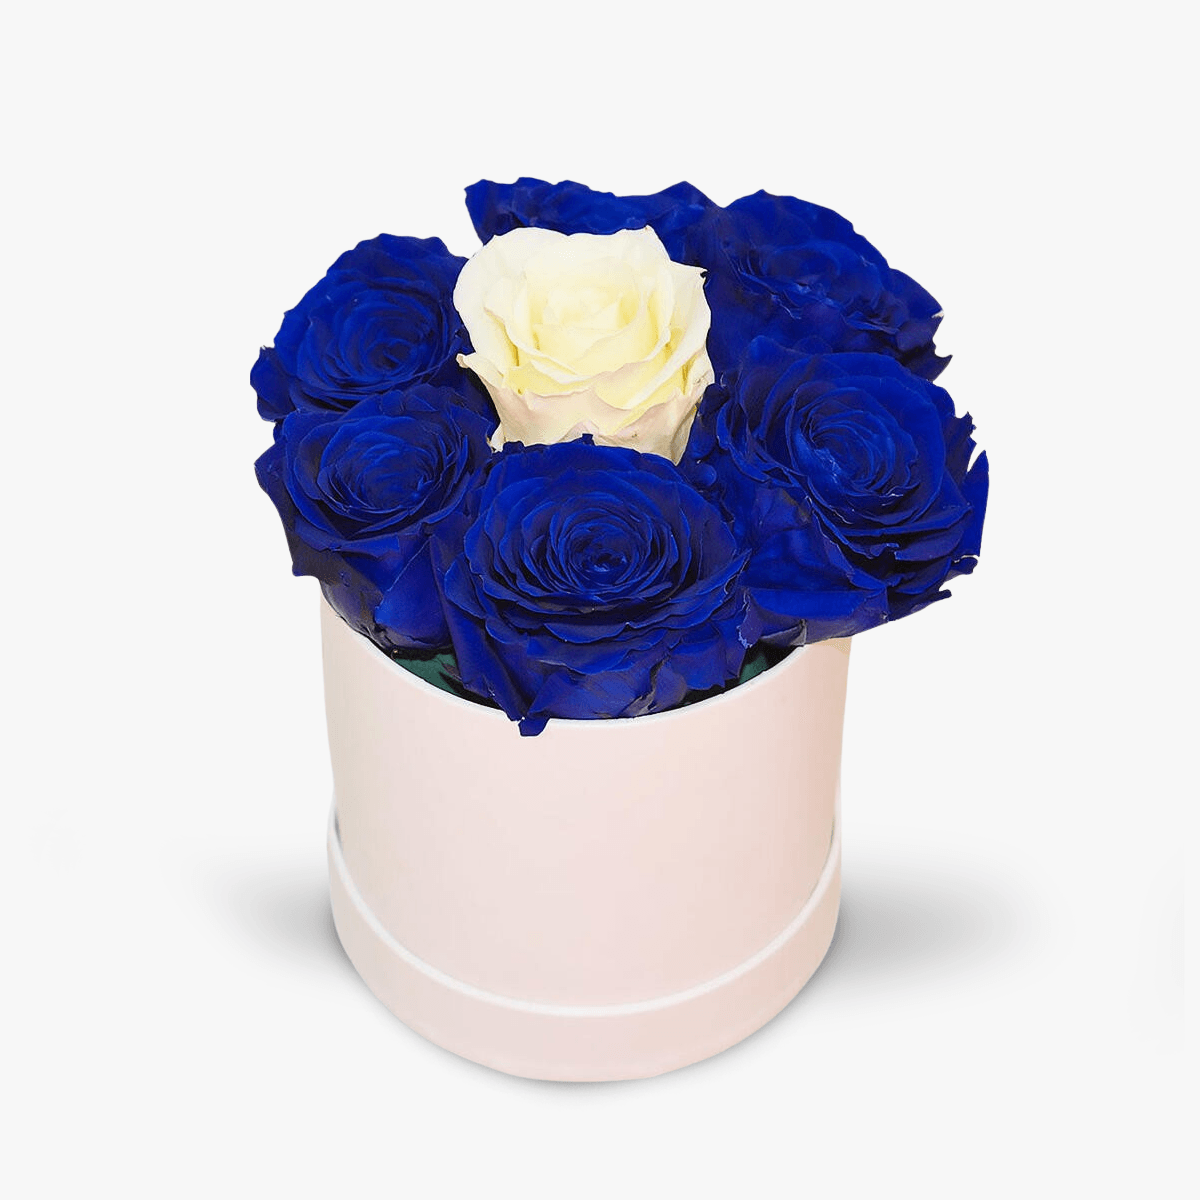 Cutie cu 7 trandafiri, albastri si albi, criogenati – Standard